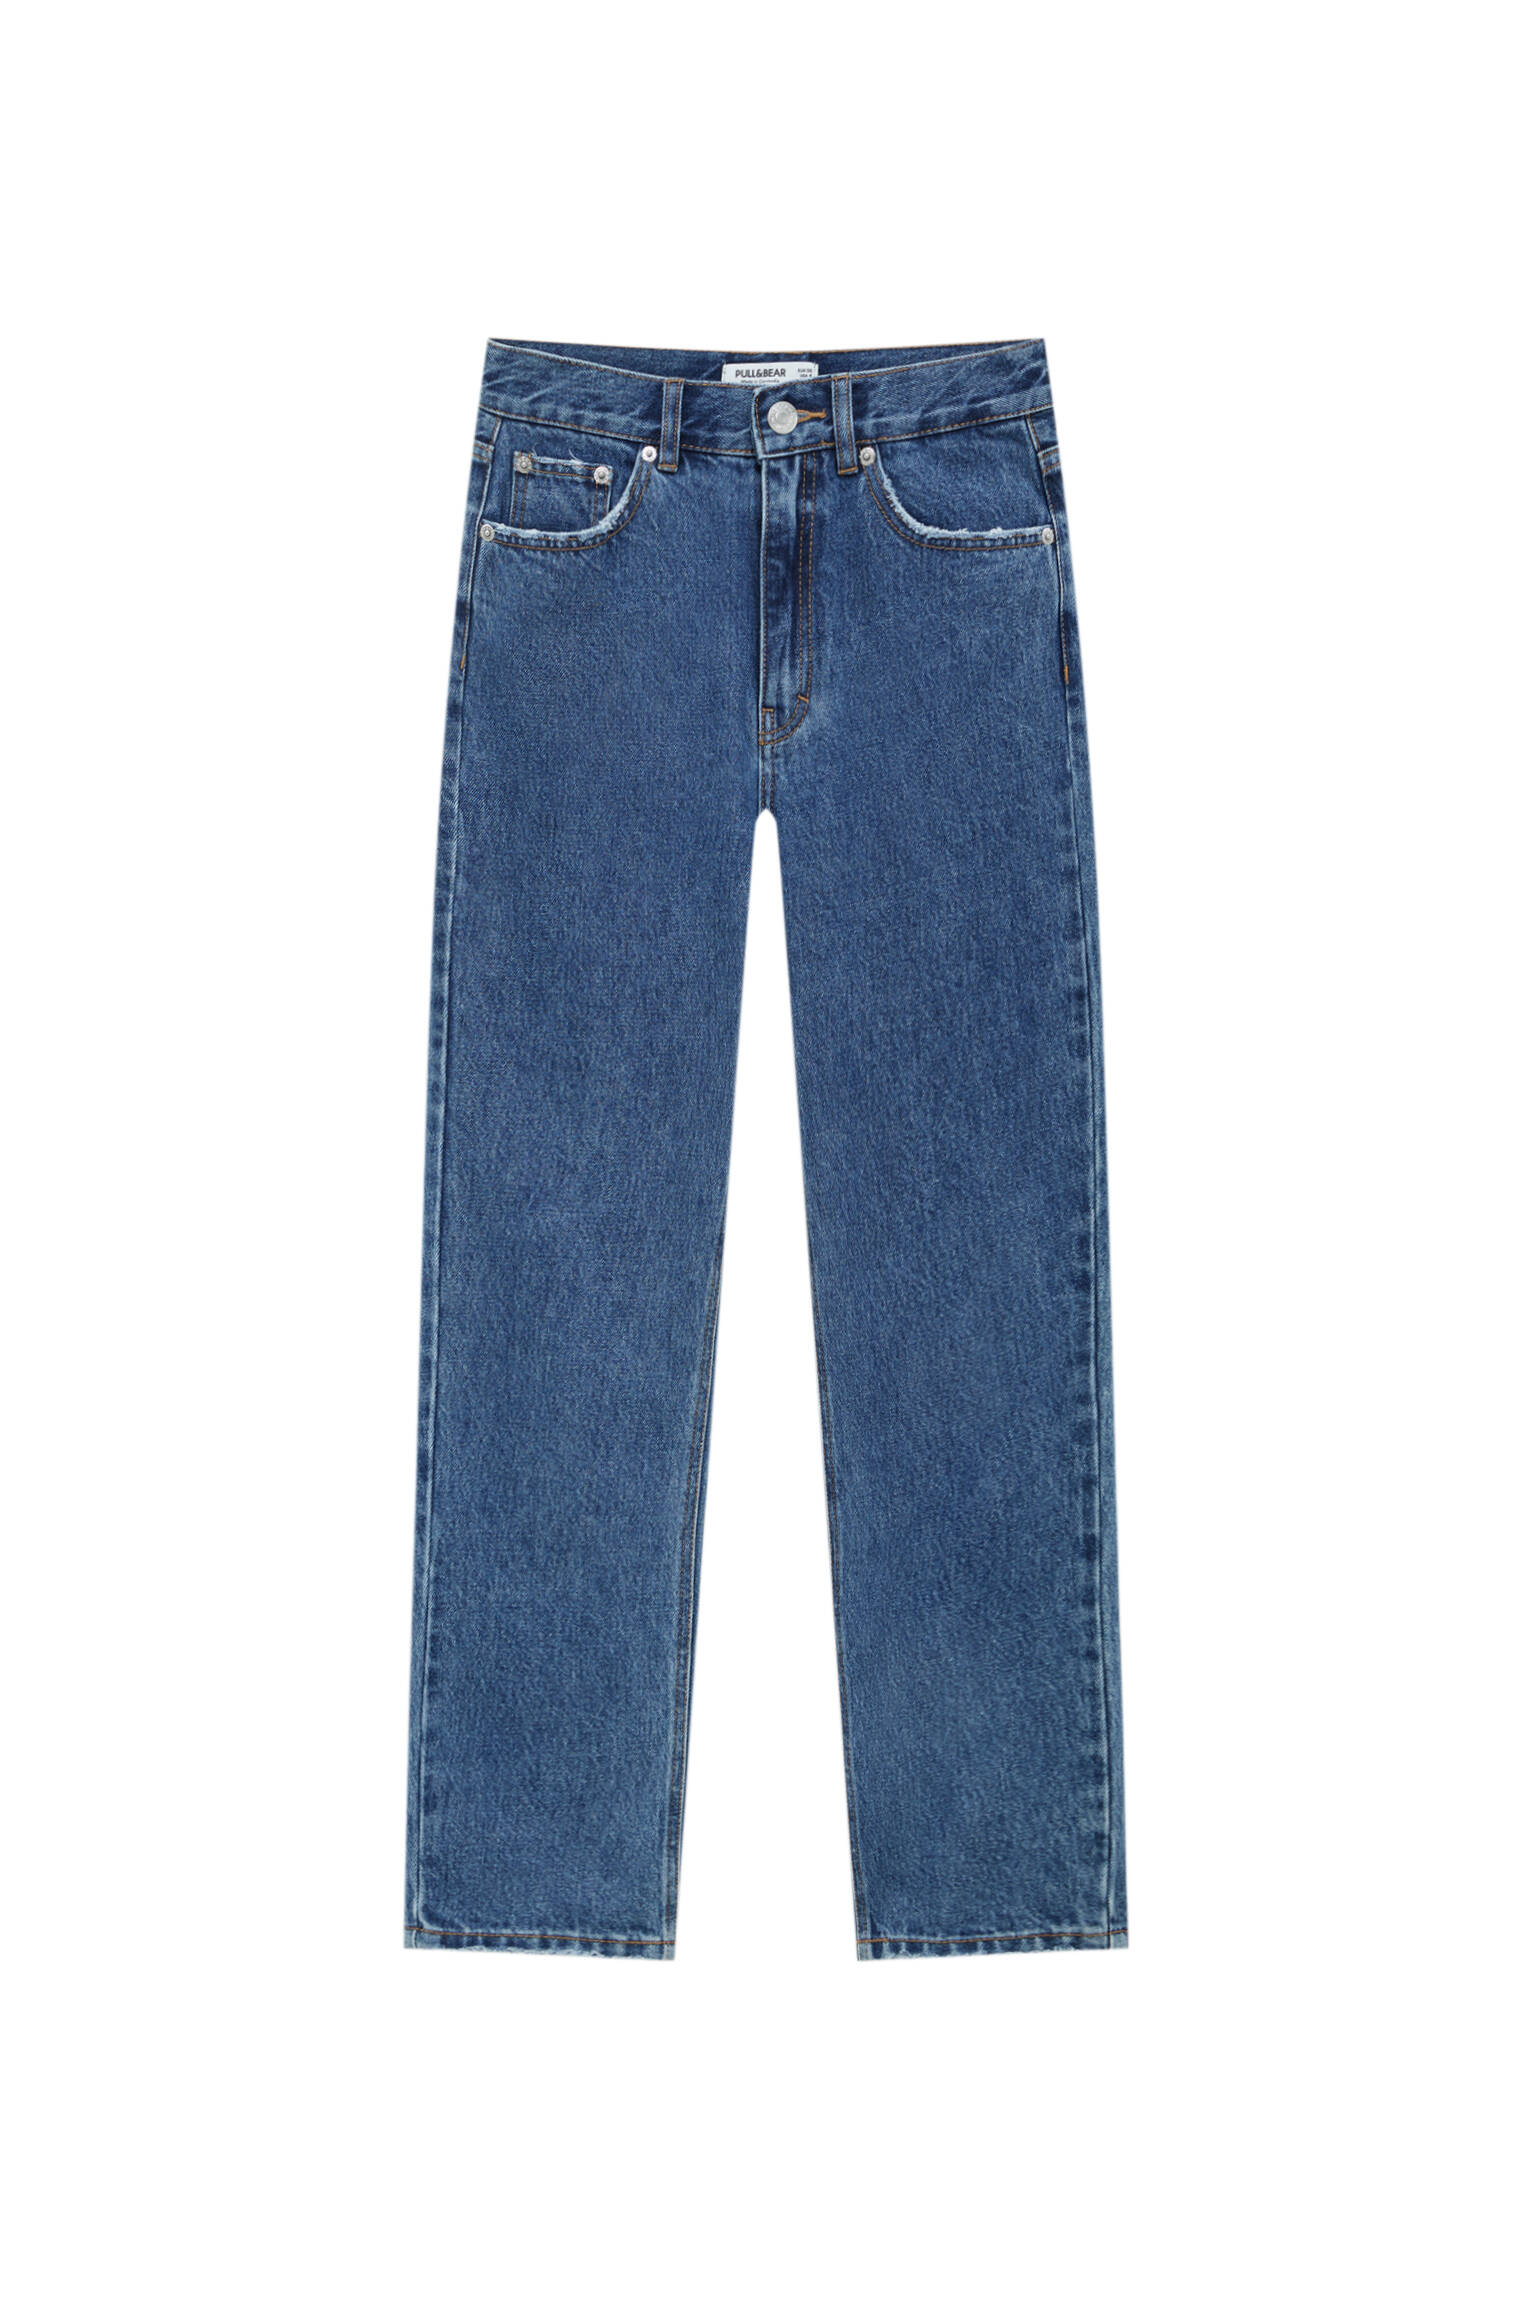 ТЕМНО-СИНИЙ Базовые джинсы mom fit - органический хлопок (не менее 50%) Pull & Bear